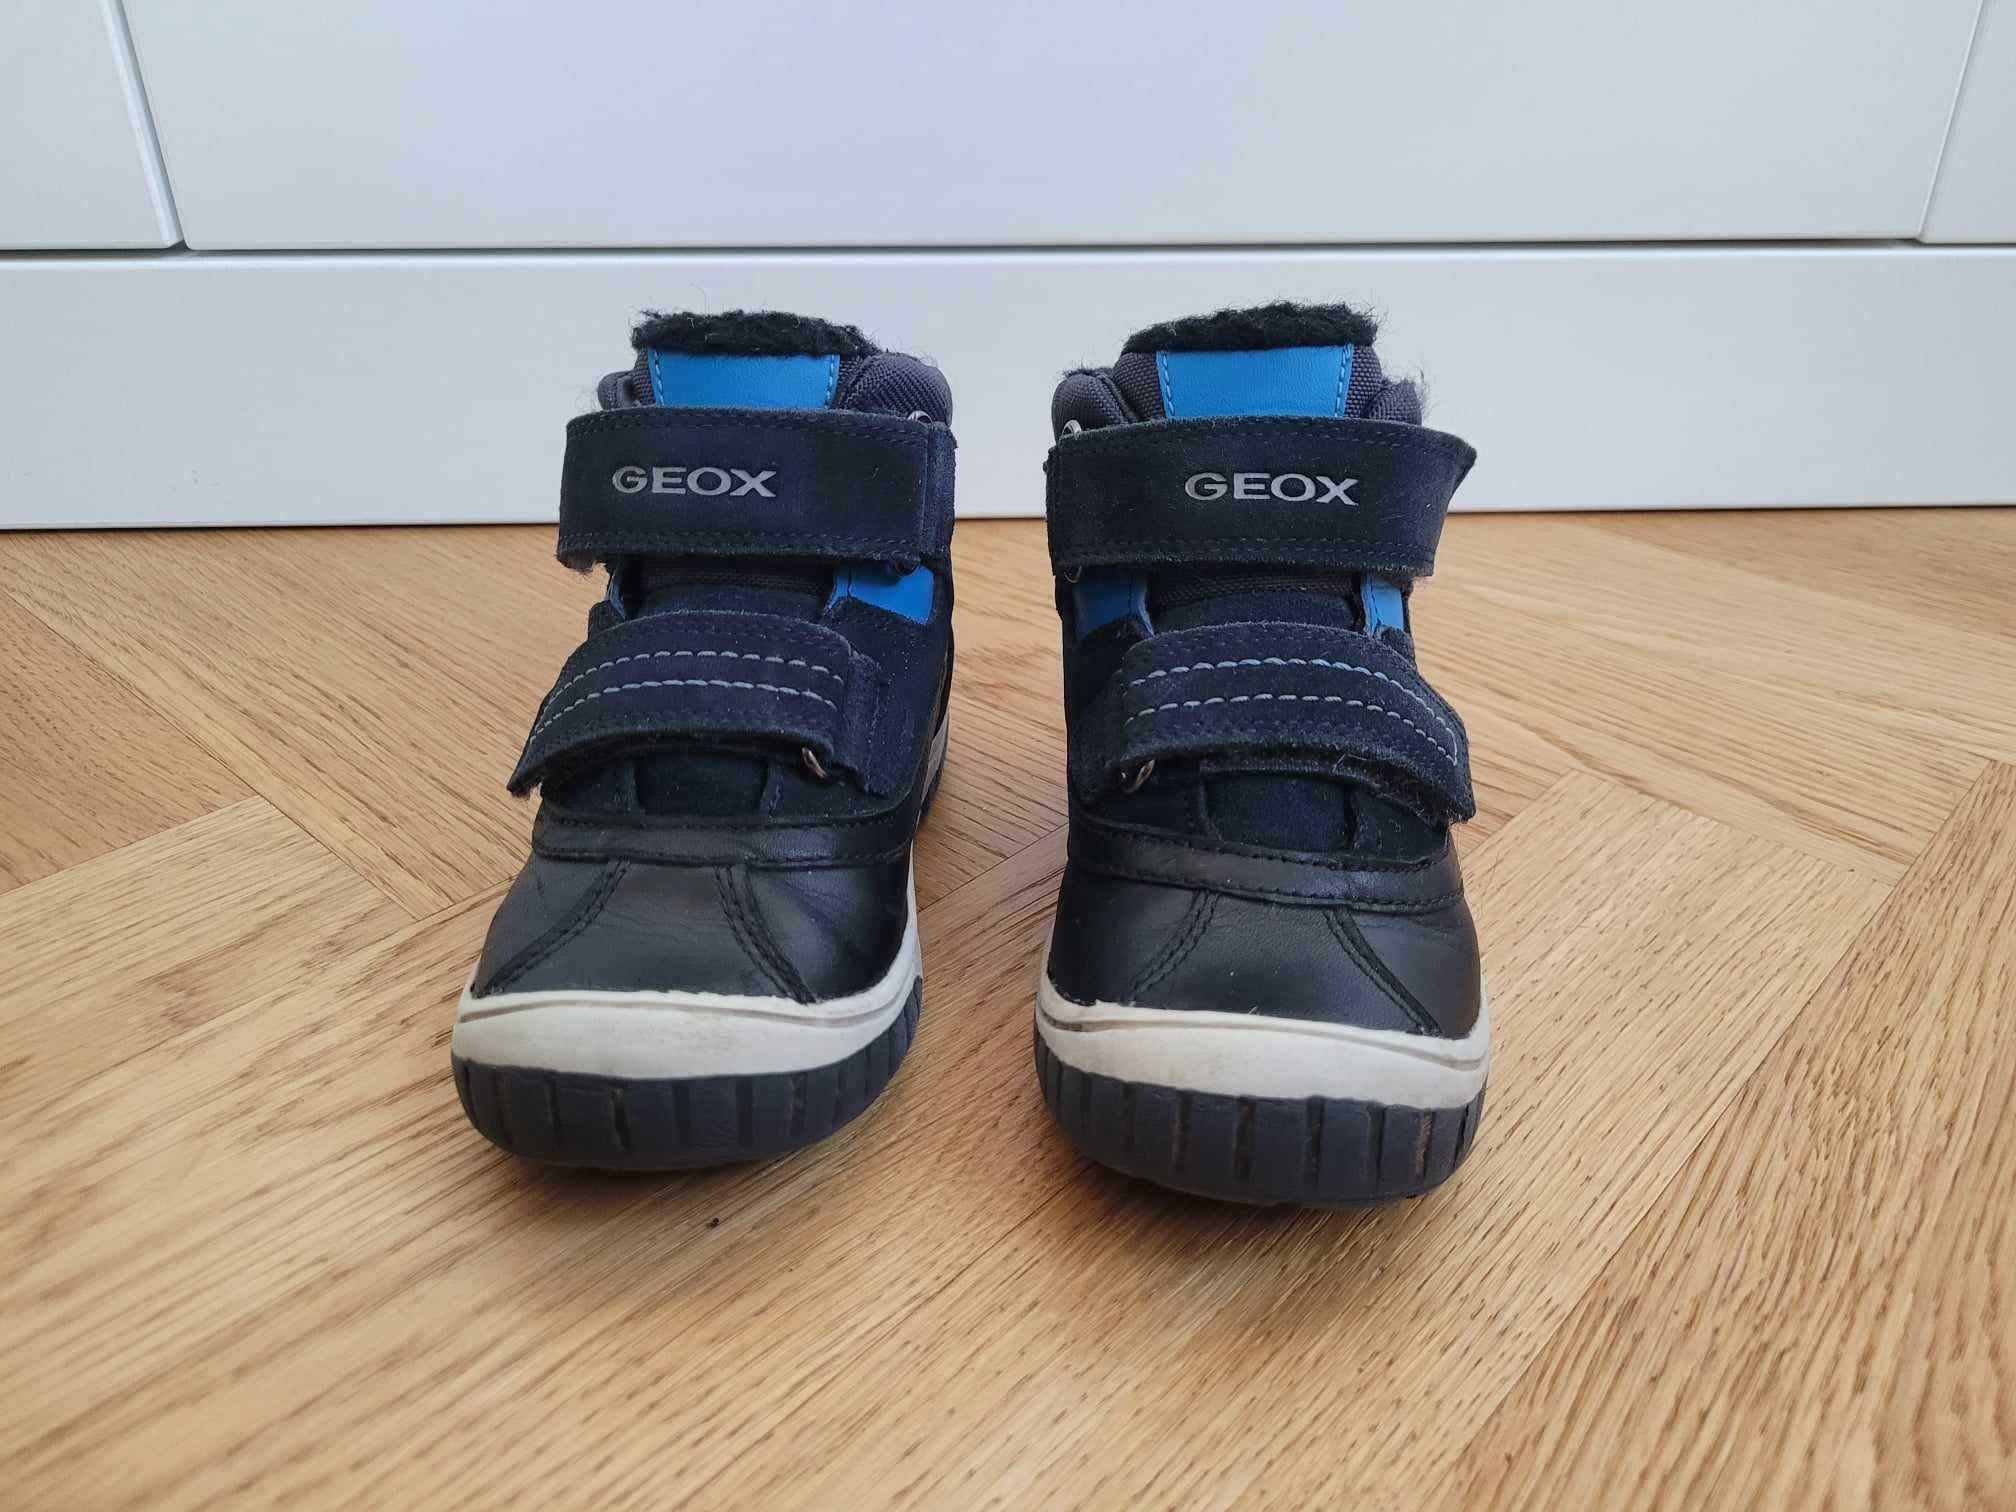 Geox buty zimowe wodoodporne za kostkę (rozm. 26, wkładka 17cm)